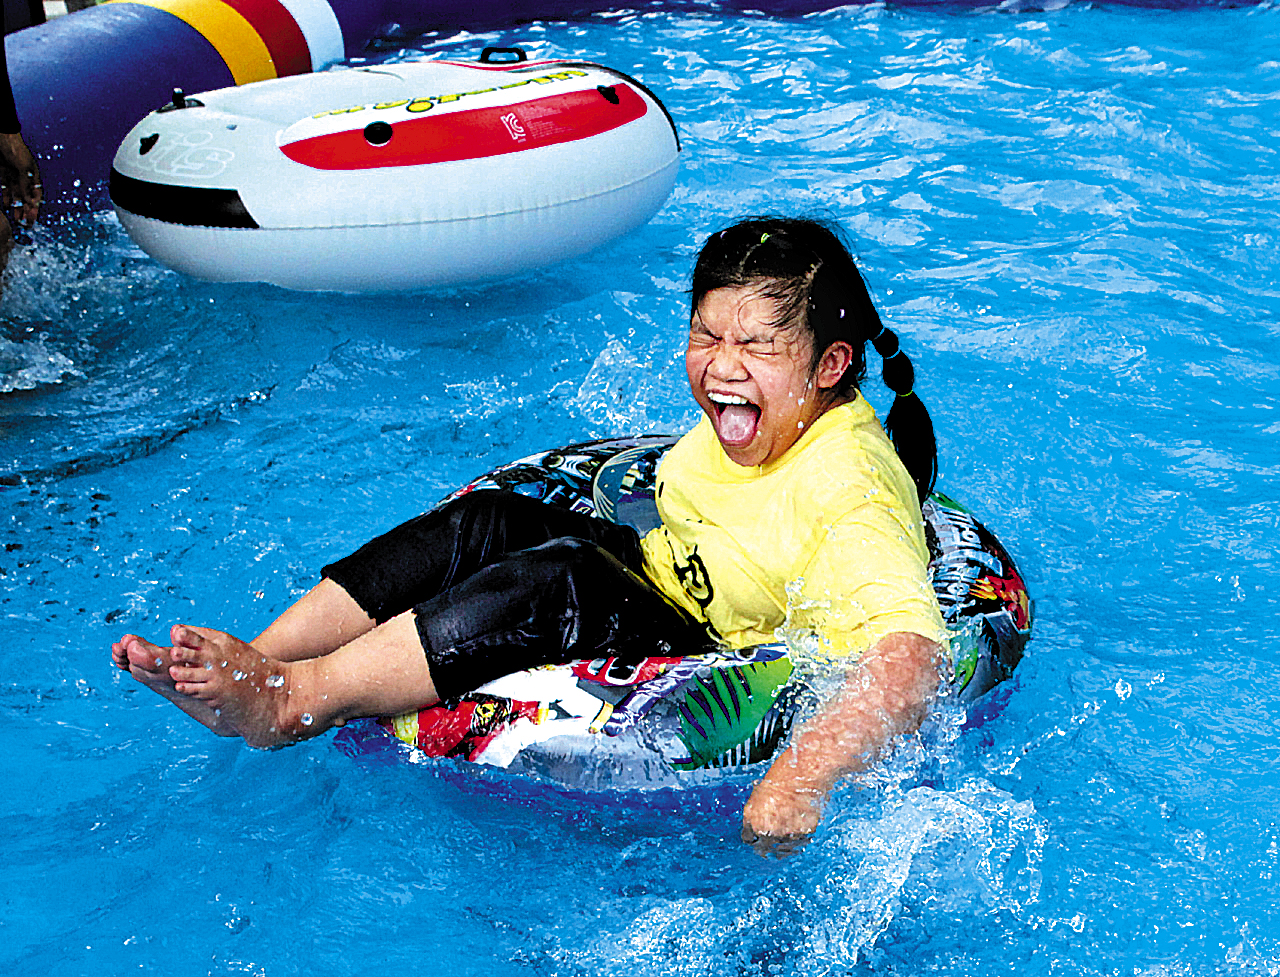 승가원 여름통합캠프에서 튜브를 타며 물놀이를 하고 있는 장애아동의 모습이다. 얼굴엔 웃음이 가득하다.